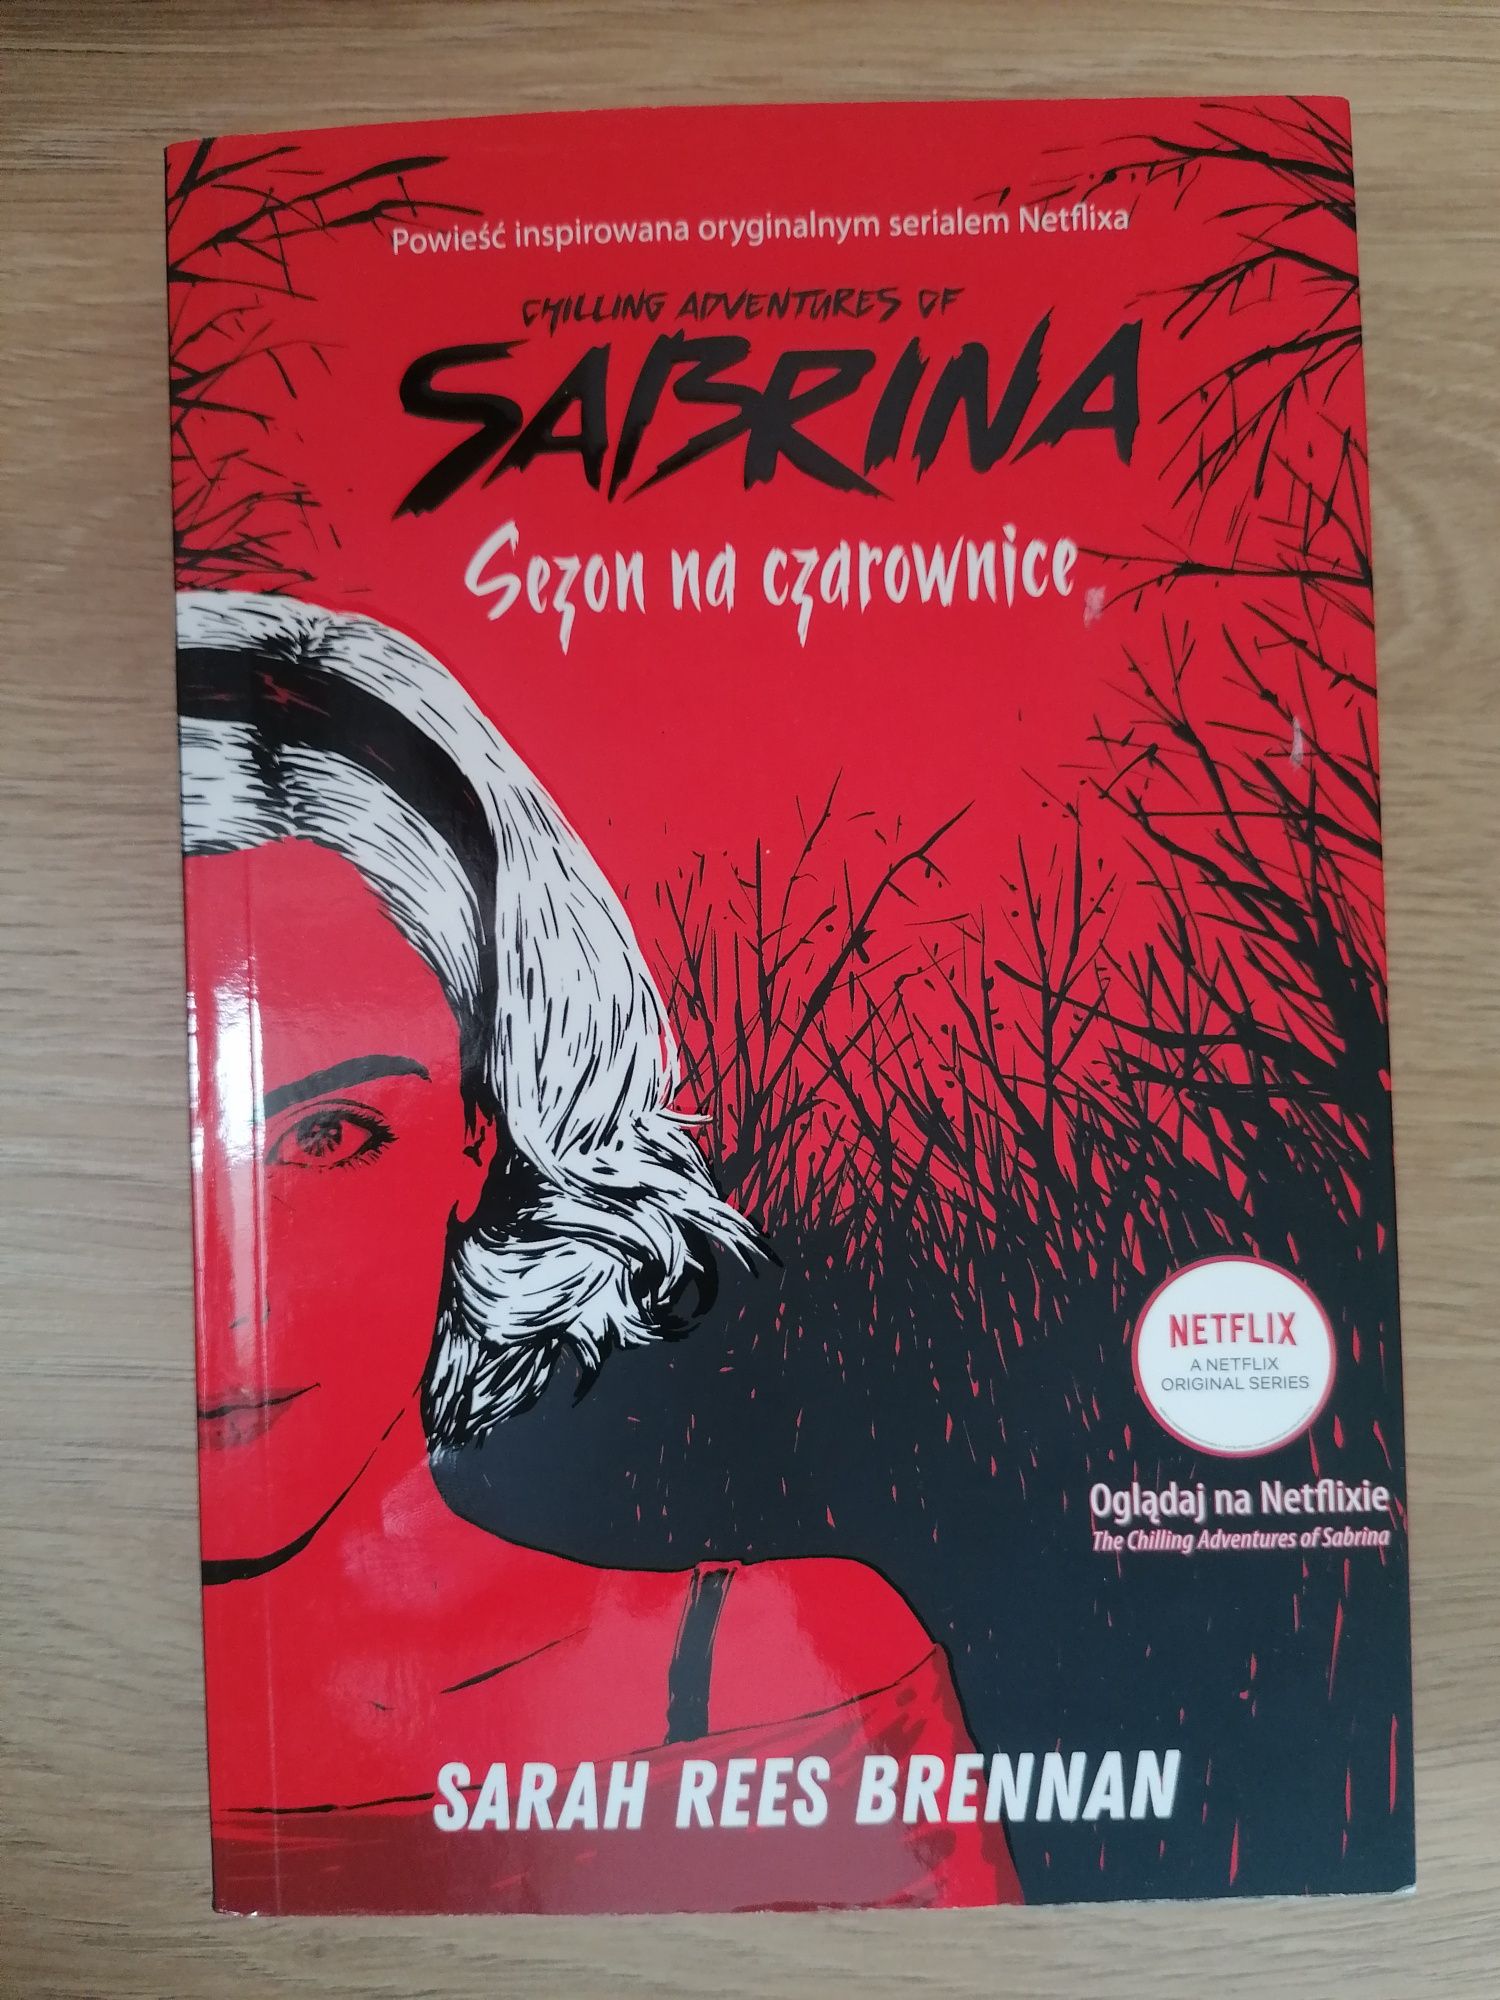 Książka "Sabrina - Sezon na czarownice"